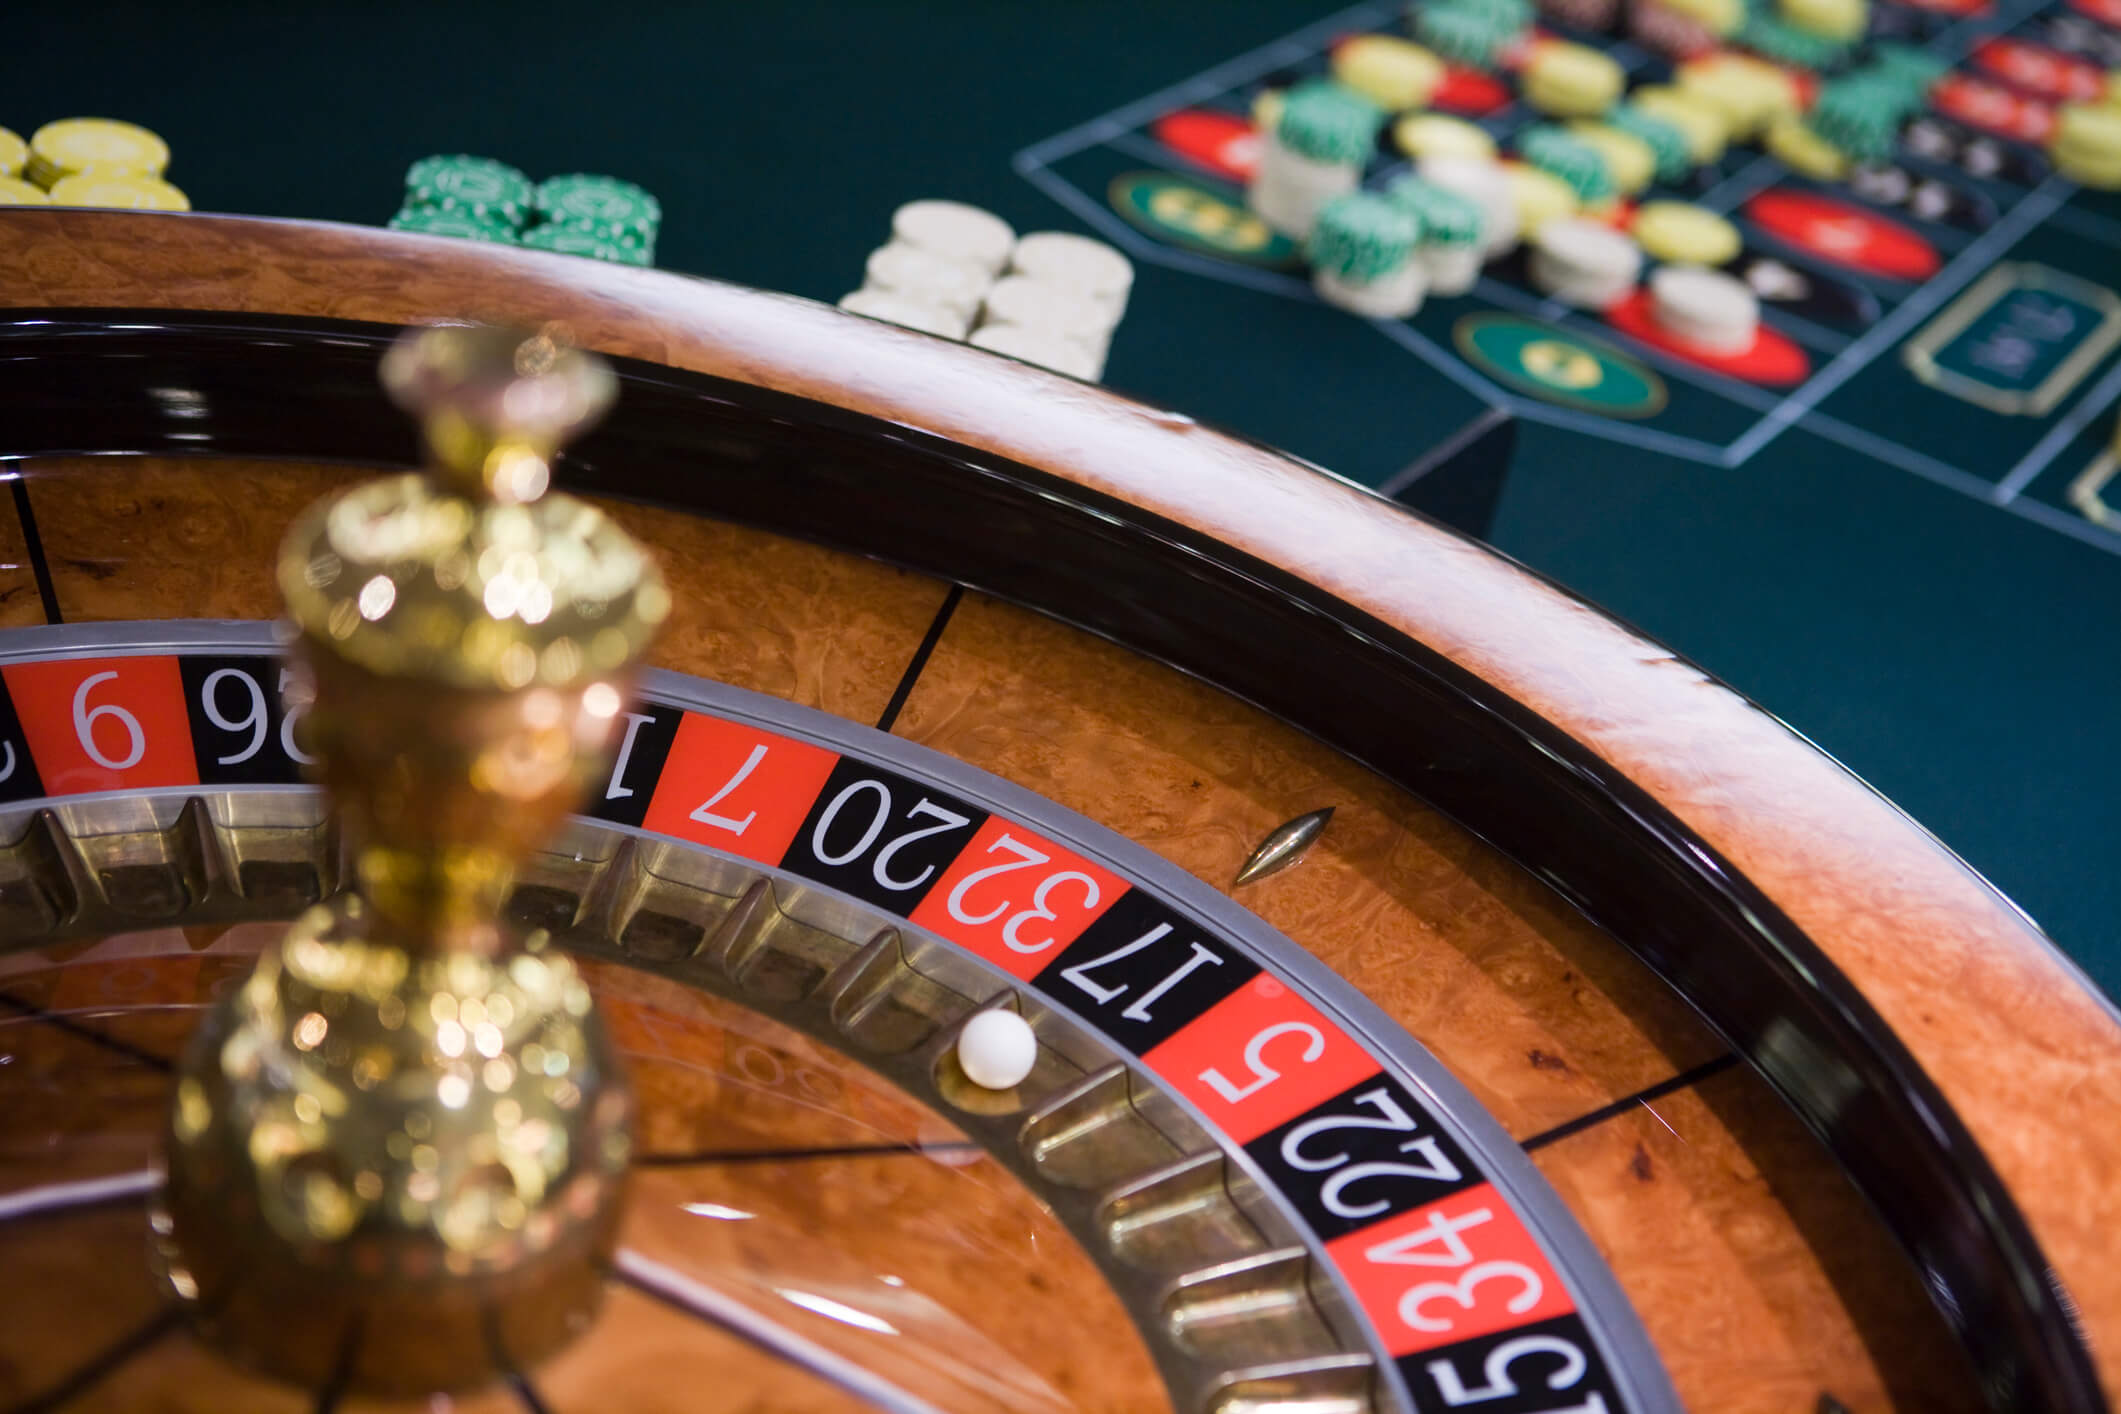 Le ultime tendenze nei giochi da casinò online su Pizazz Bingo Casino